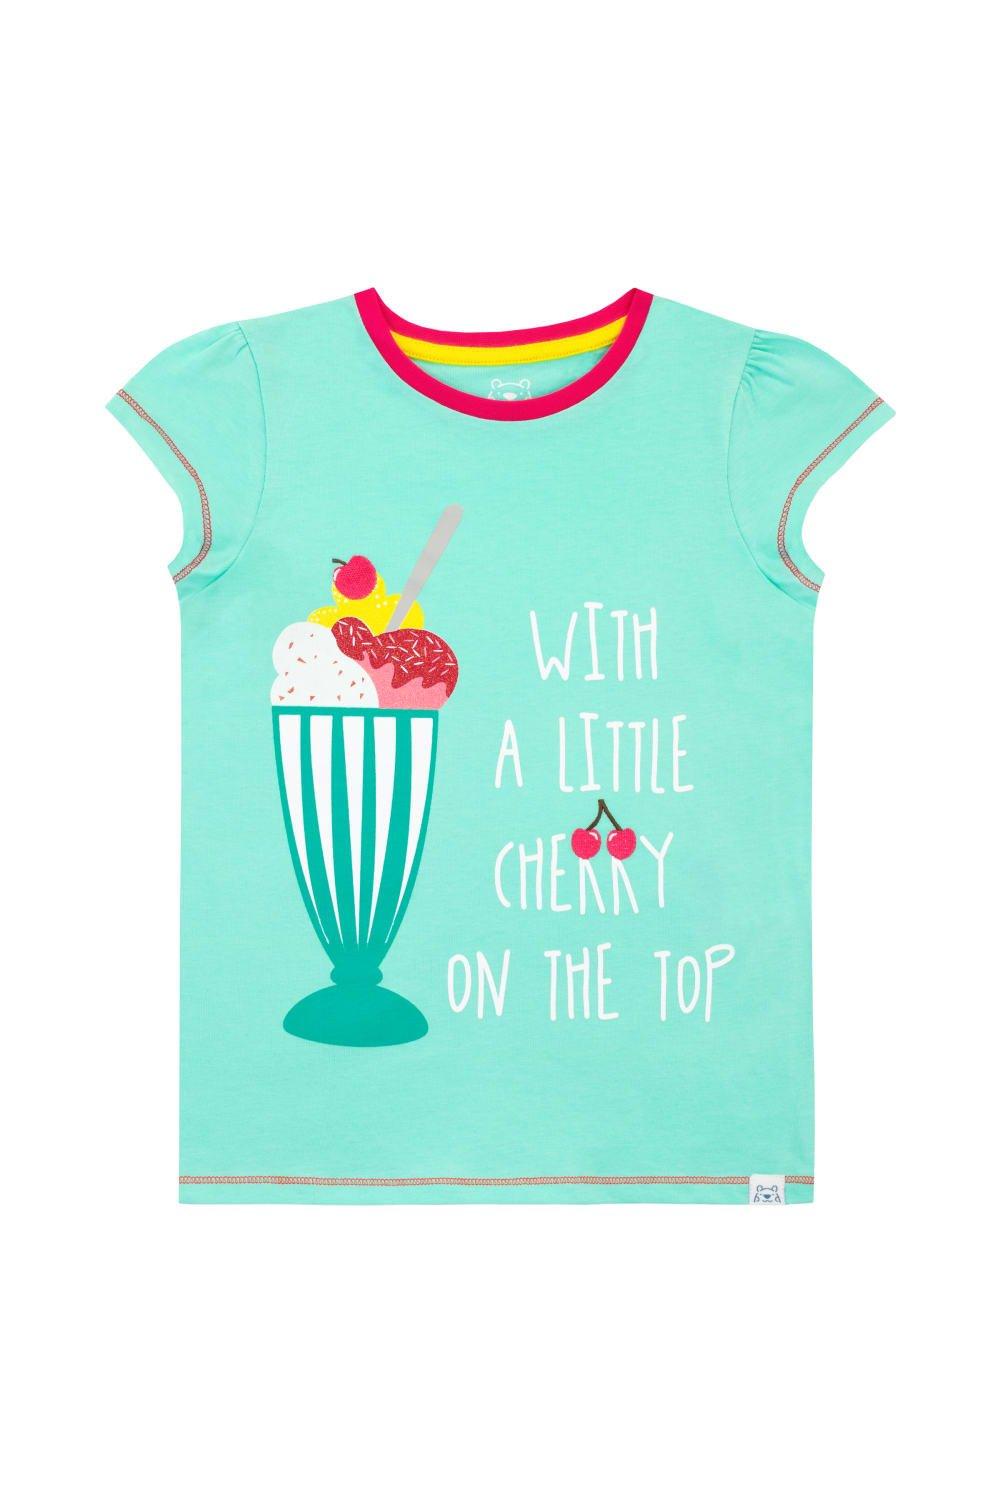 A Little Cherry On Top T-Shirt